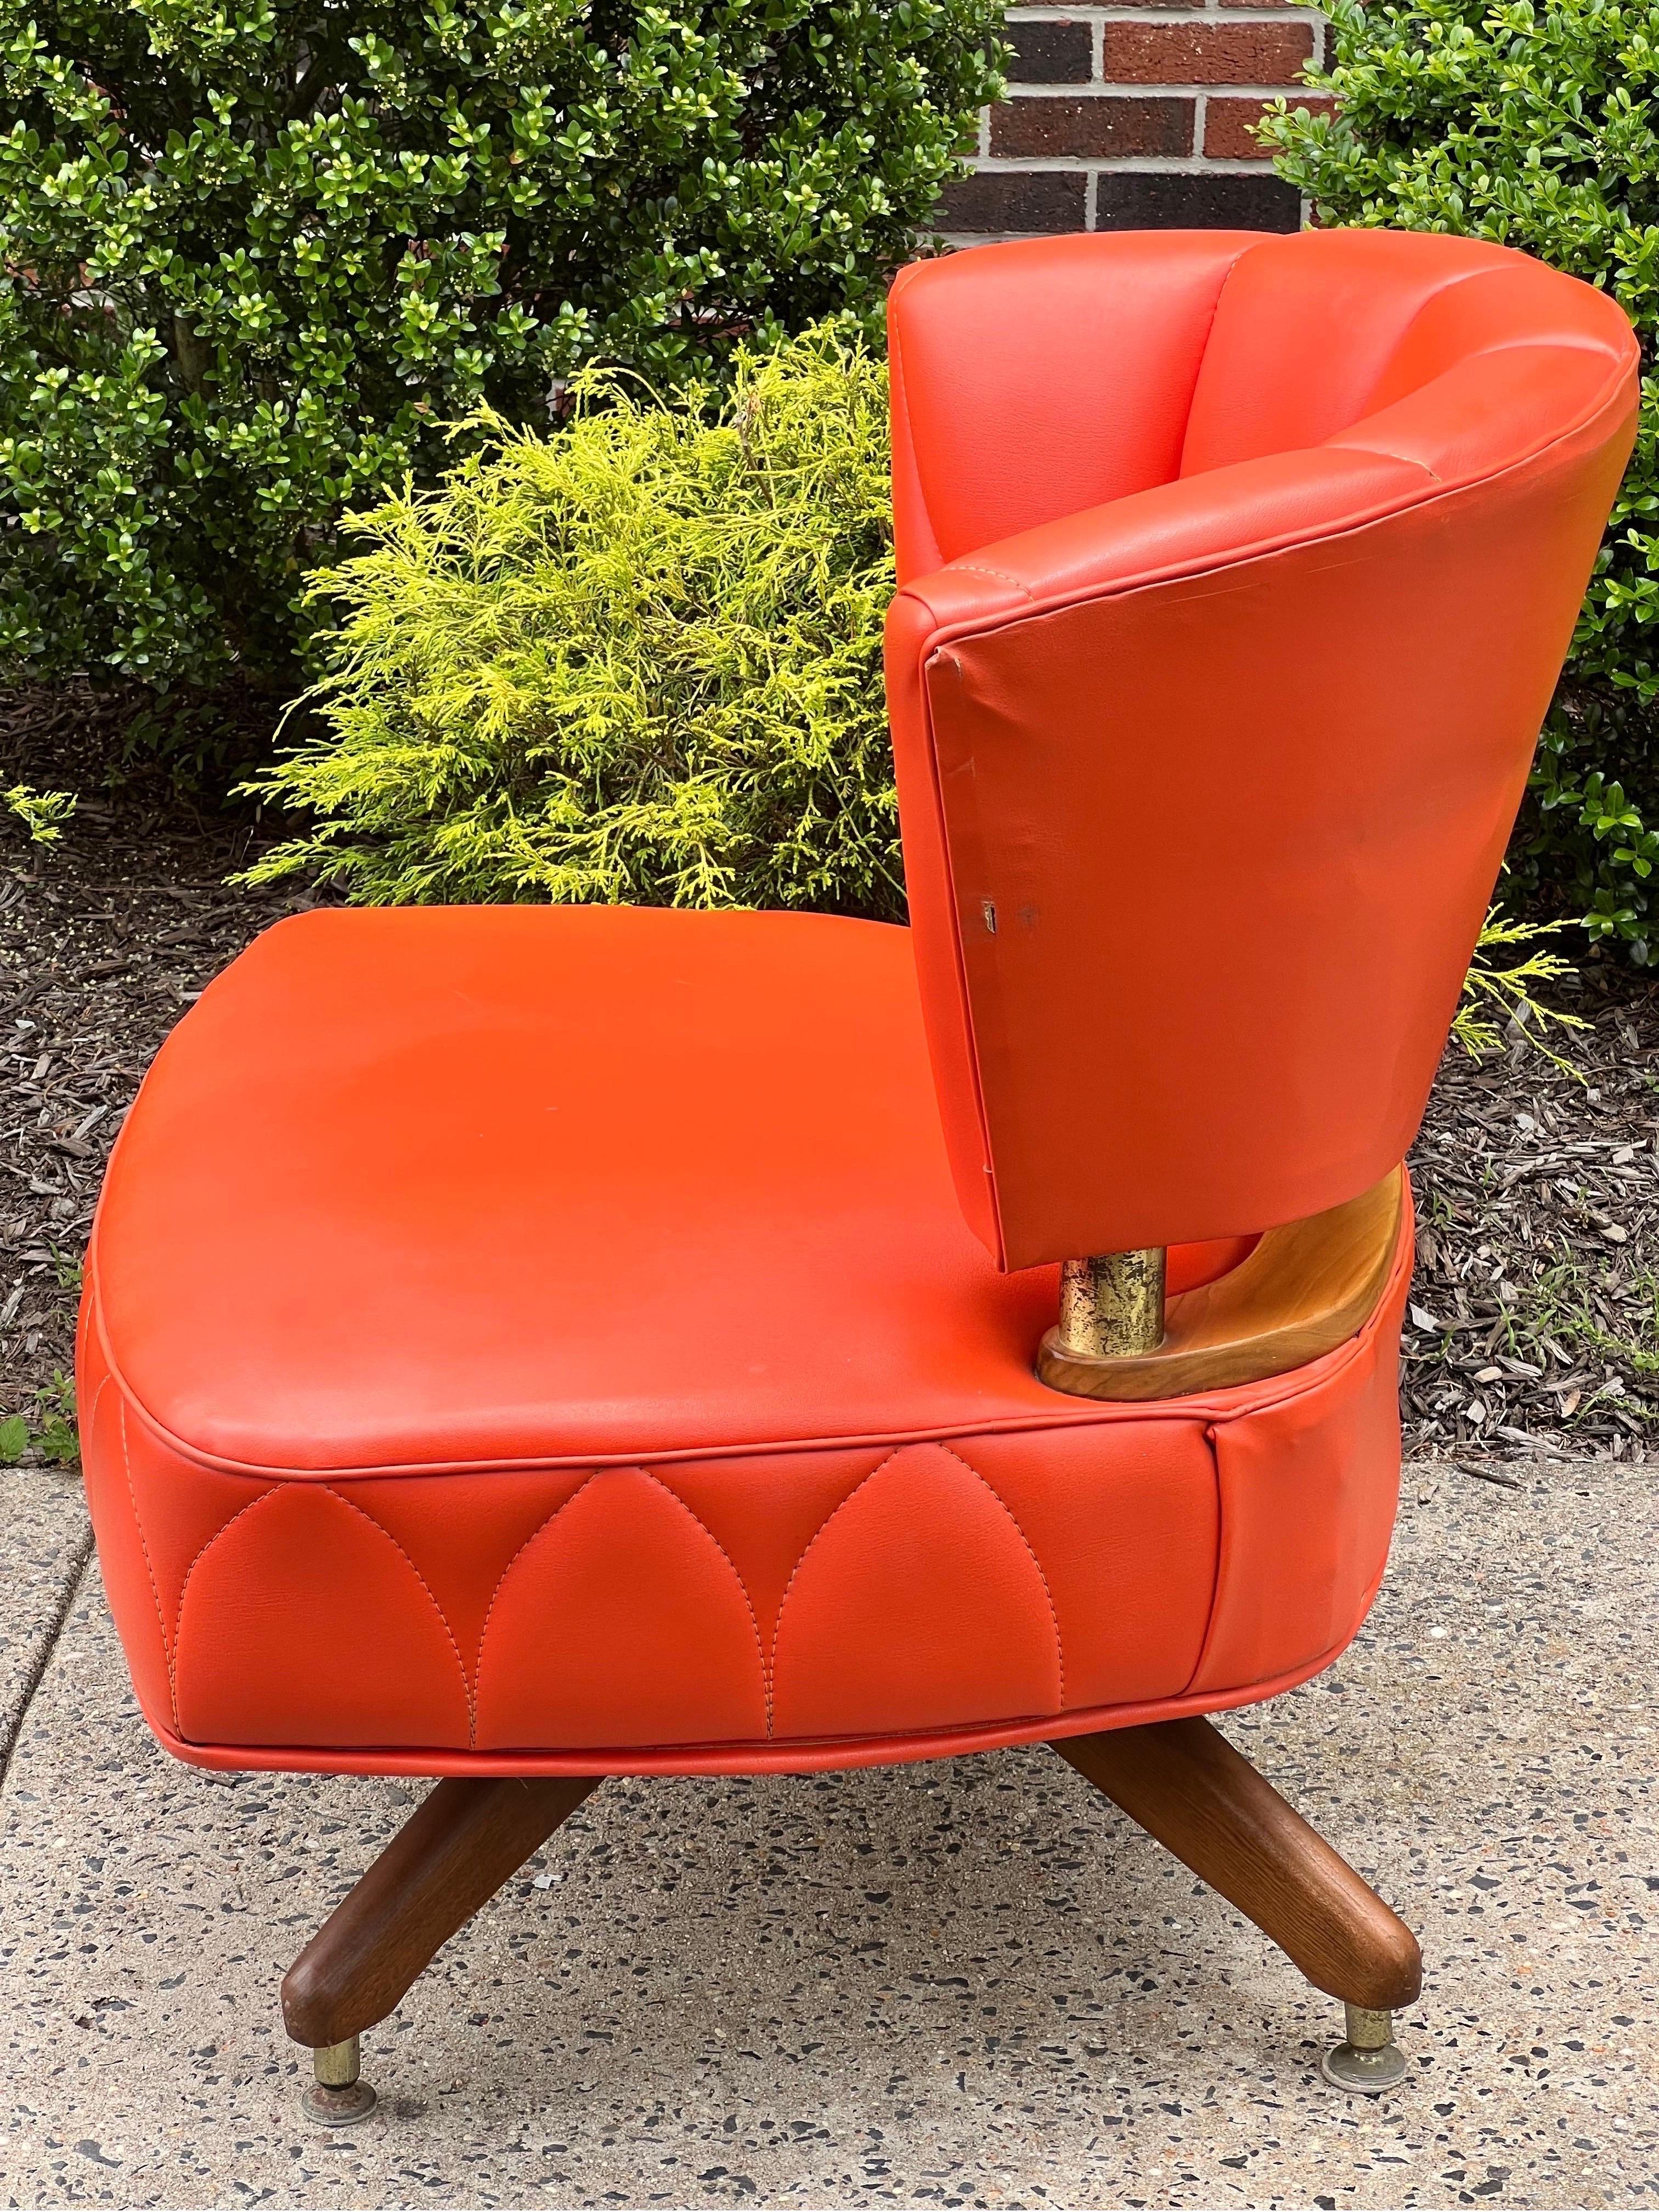 Fabuleux fauteuil pivotant vintage de Kroehler, 1962.

Une belle chaise rembourrée dans une nuance vibrante de faux cuir orange mandarine avec un détail unique de motif de couture. La couleur de la sellerie a conservé sa vitalité et ne présente